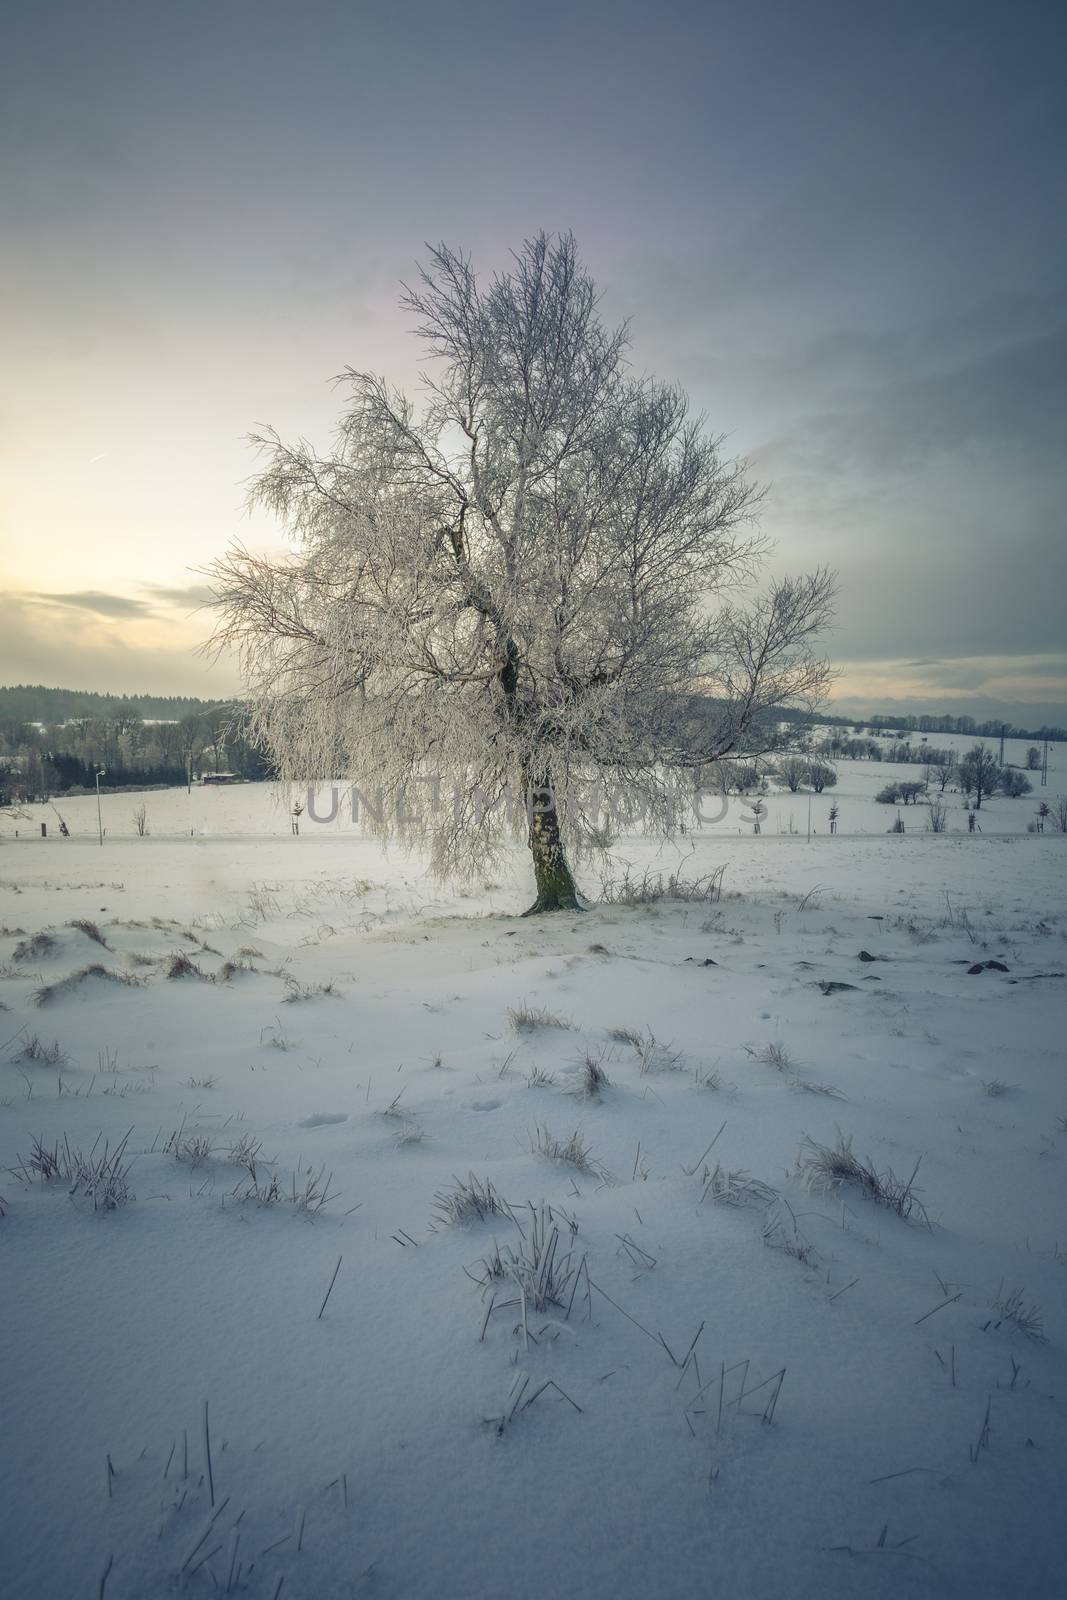 Single Tree in a solitude Winter Landscape by petrsvoboda91